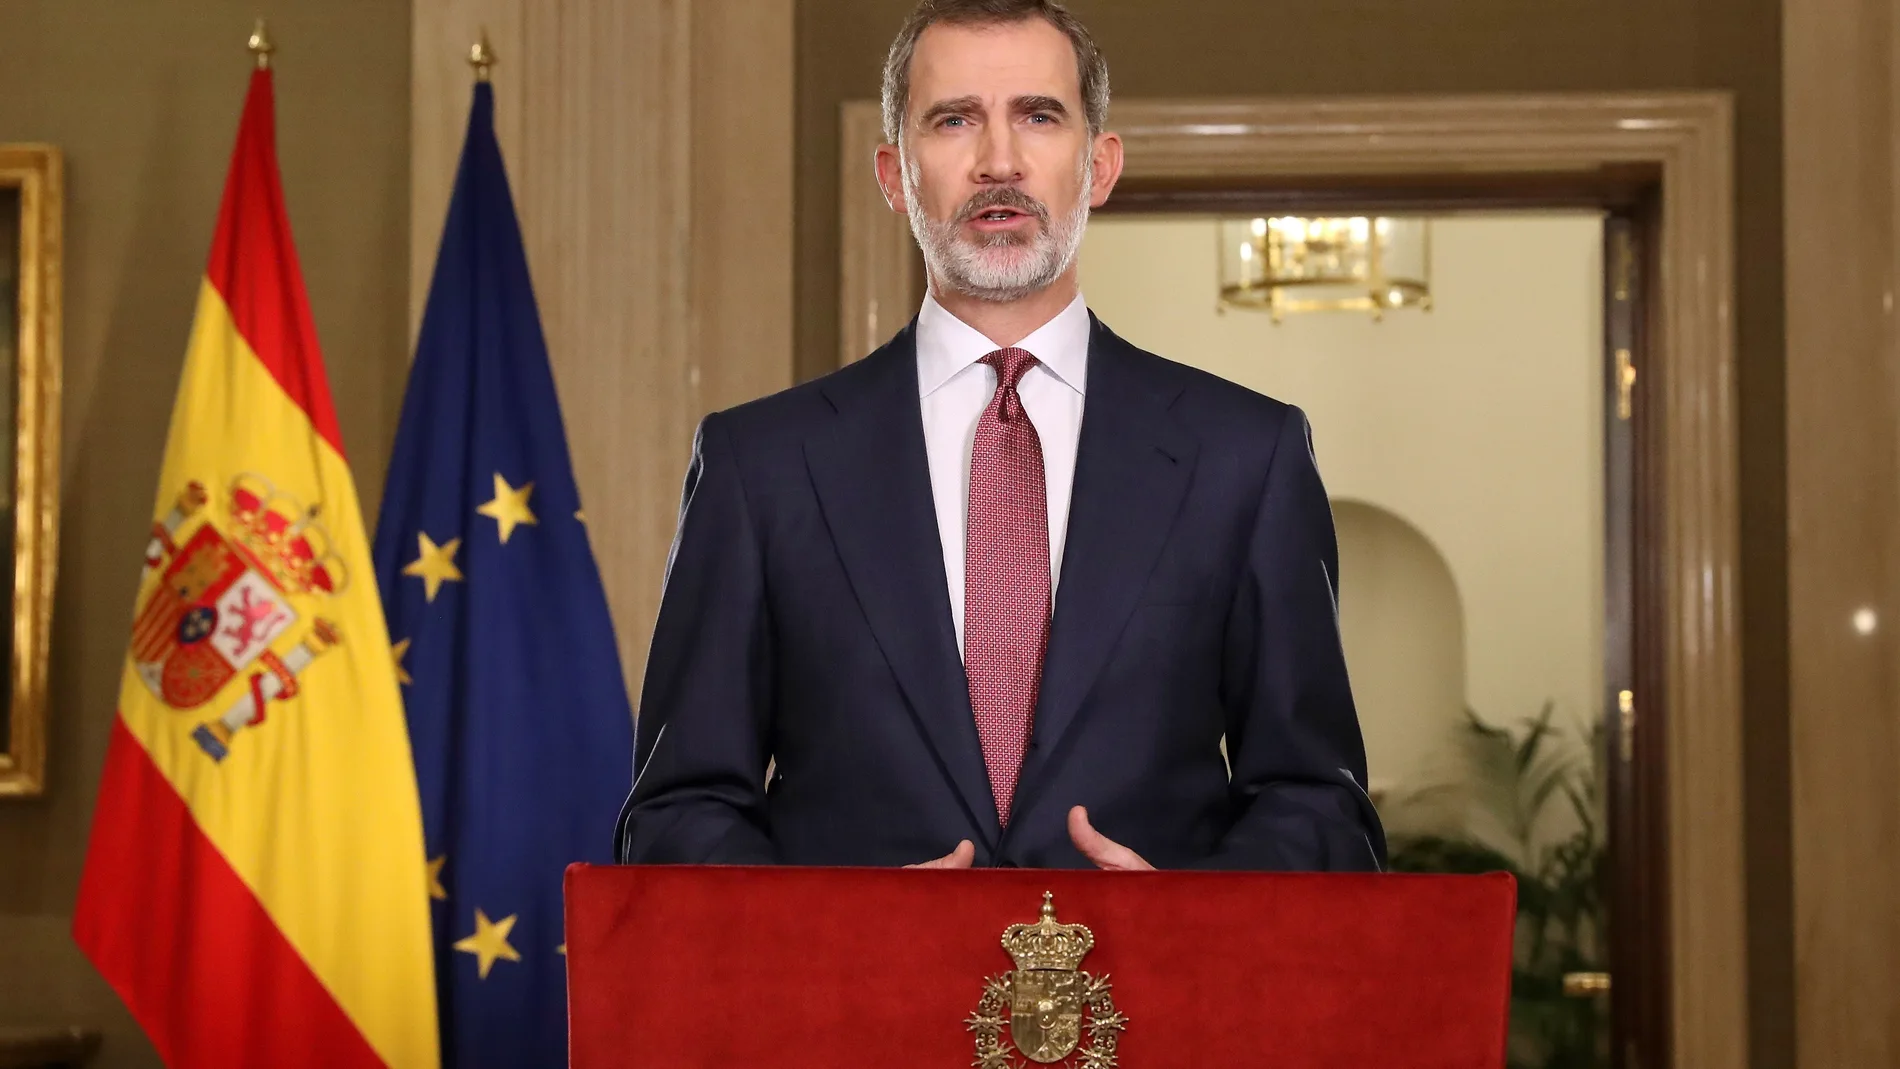 El rey Felipe VI se dirige esta noche a los españoles en un mensaje por televisión en relación con la crisis del coronavirus después de reunirse en el Palacio de la Zarzuela con el presidente del Gobierno, Pedro Sánchez.